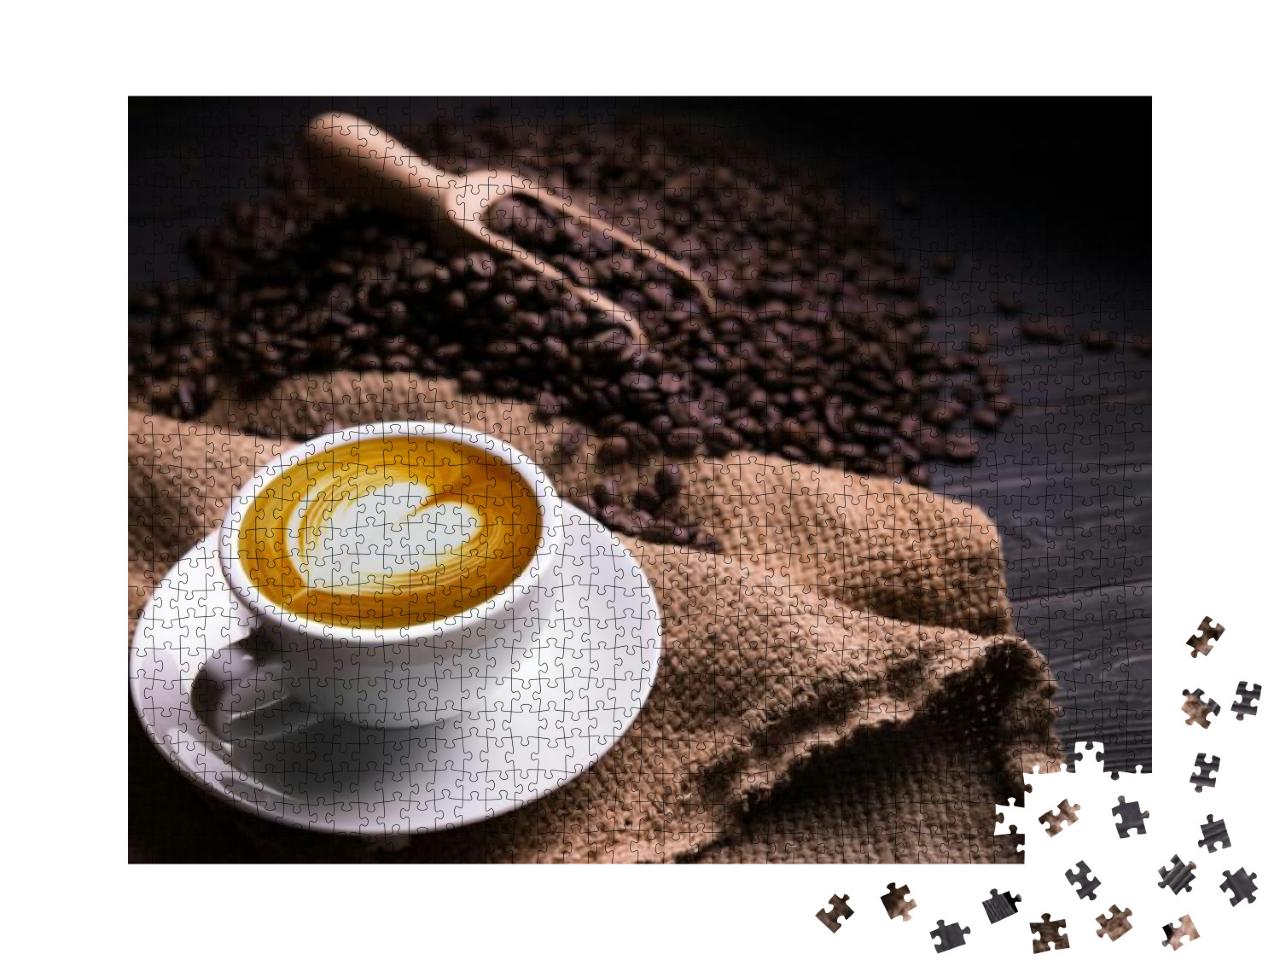 Puzzle 1000 Teile „Tasse Kaffee mit Milchschaum-Herz “